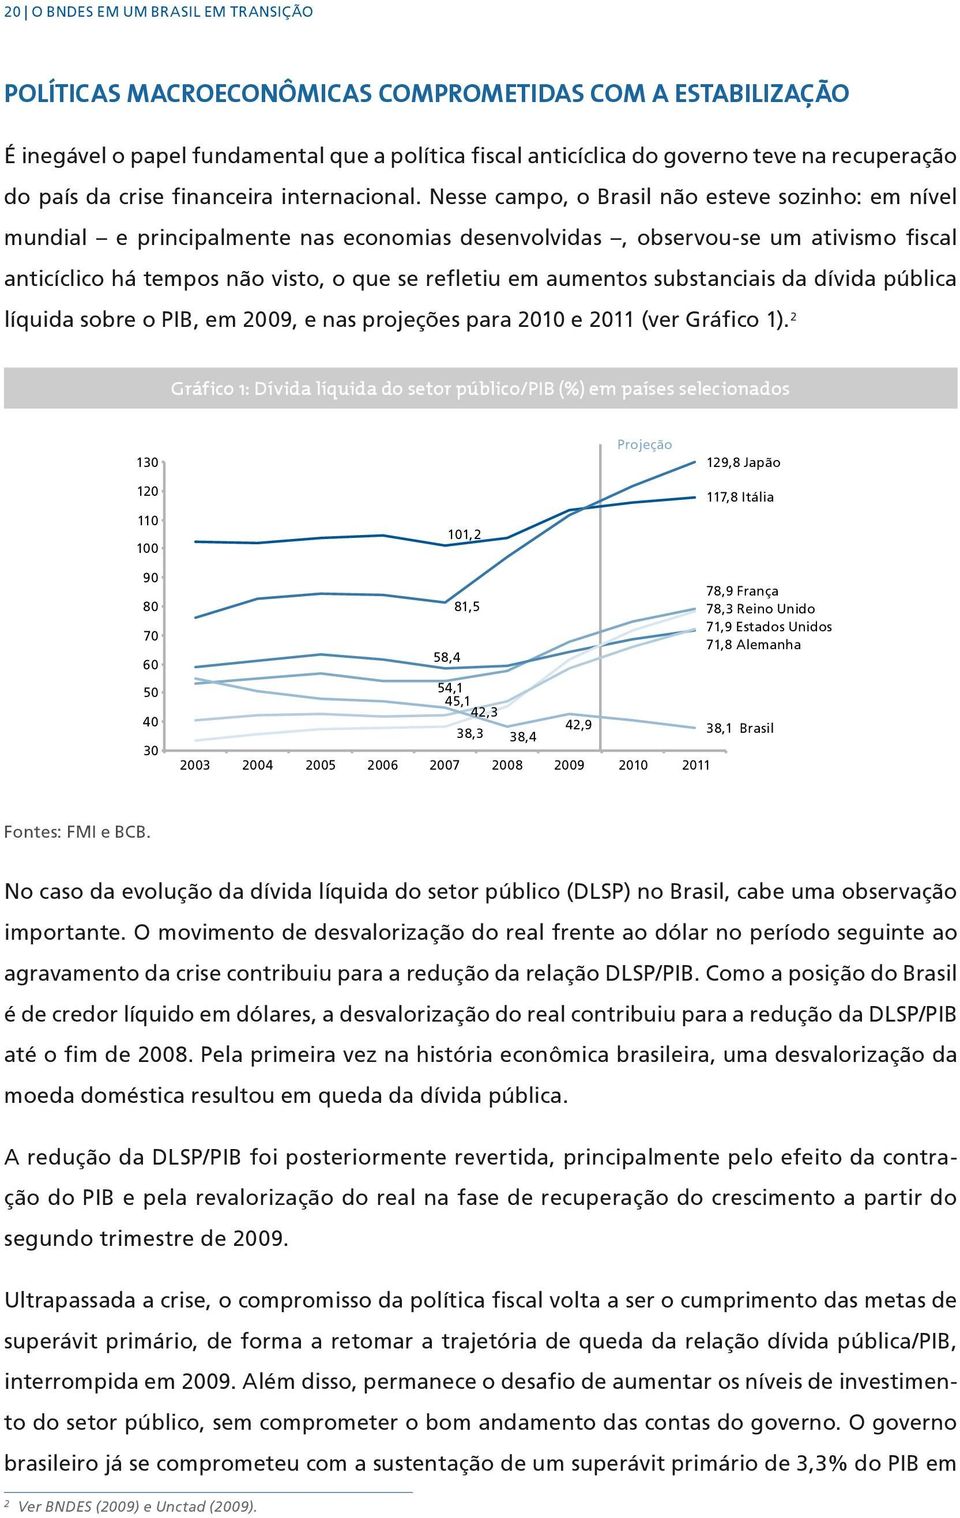 Nesse campo, o Brasil não esteve sozinho: em nível mundial e principalmente nas economias desenvolvidas, observou-se um ativismo fiscal anticíclico há tempos não visto, o que se refletiu em aumentos